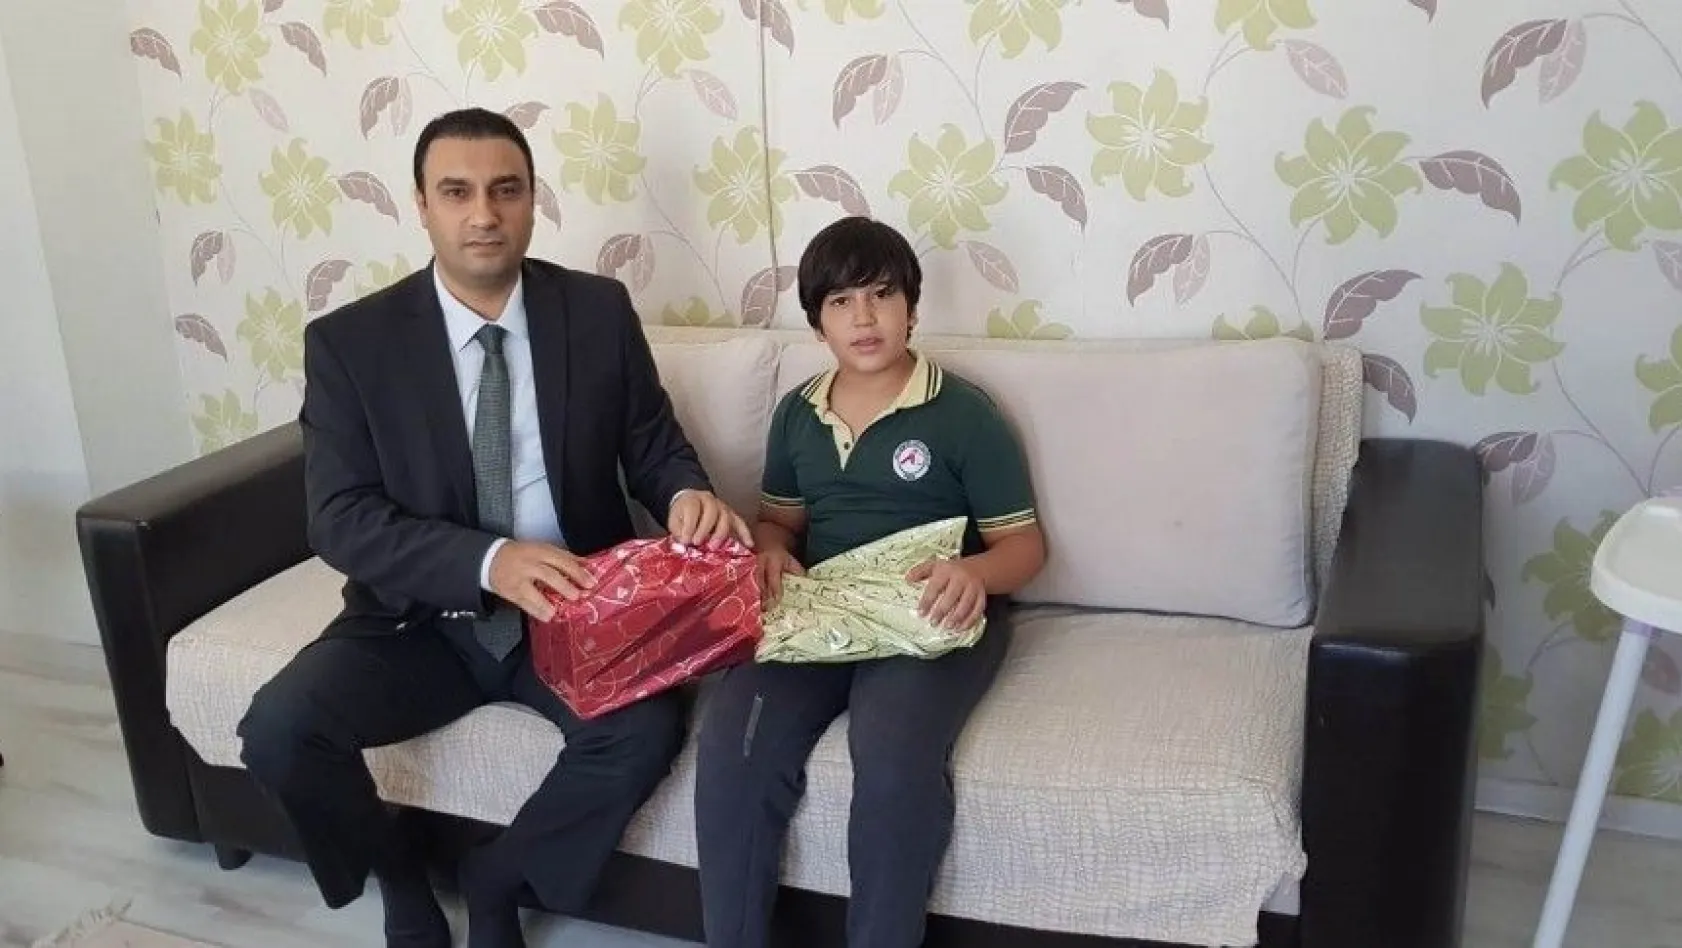 Cumhurbaşkanı Erdoğan'ın dağıttığı hediyelerden alamayan çocuğa özel hediye gönderildi
